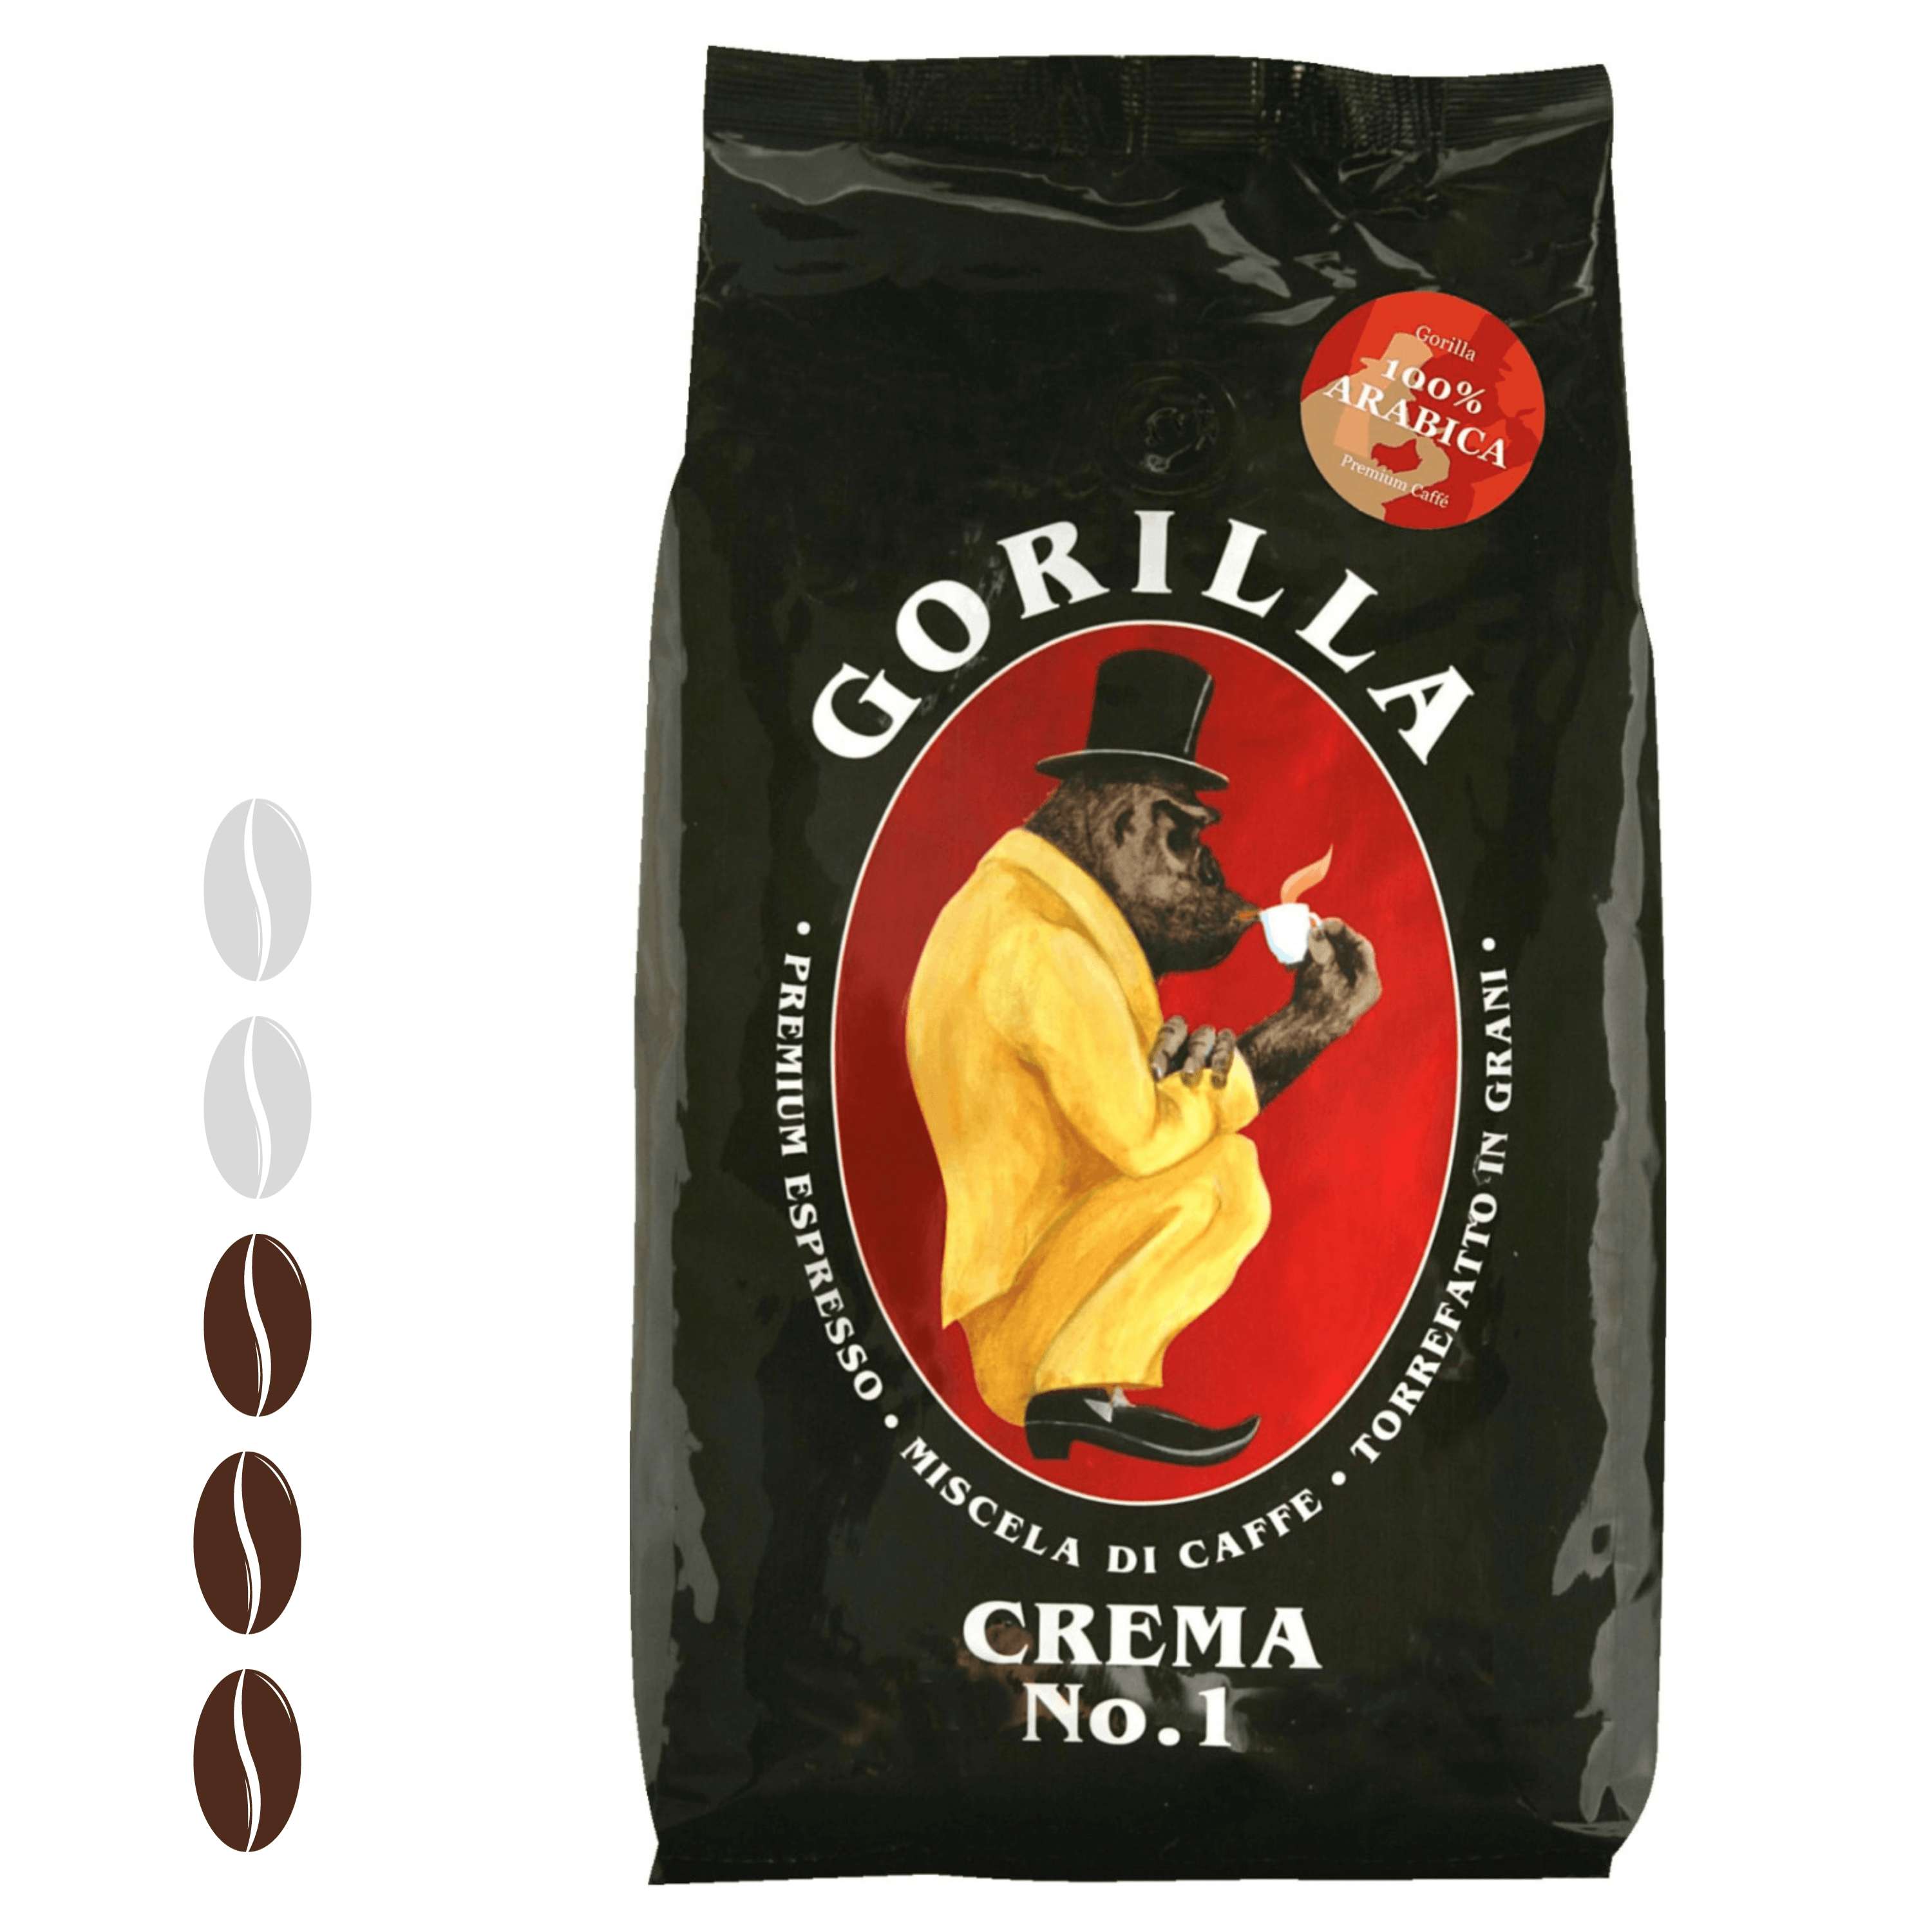 Gorilla Espresso Crema No.1 ganze Bohnen 1 kg geringer Koffeingehalt